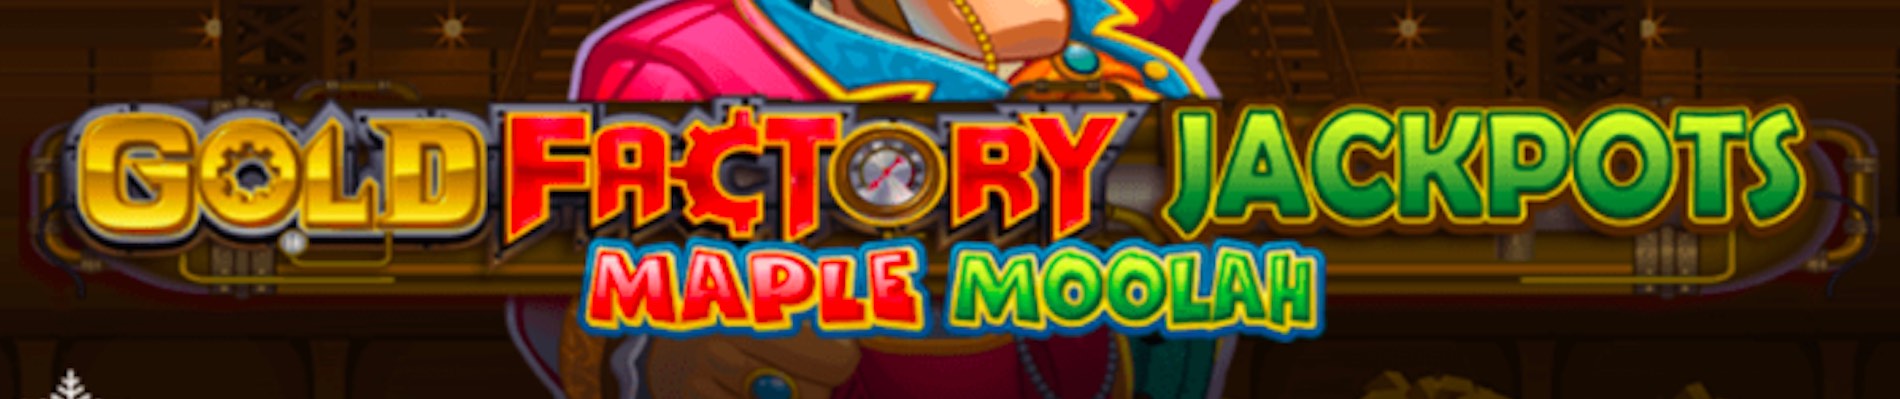 Gold Factory Maple Moolah Slot Banner